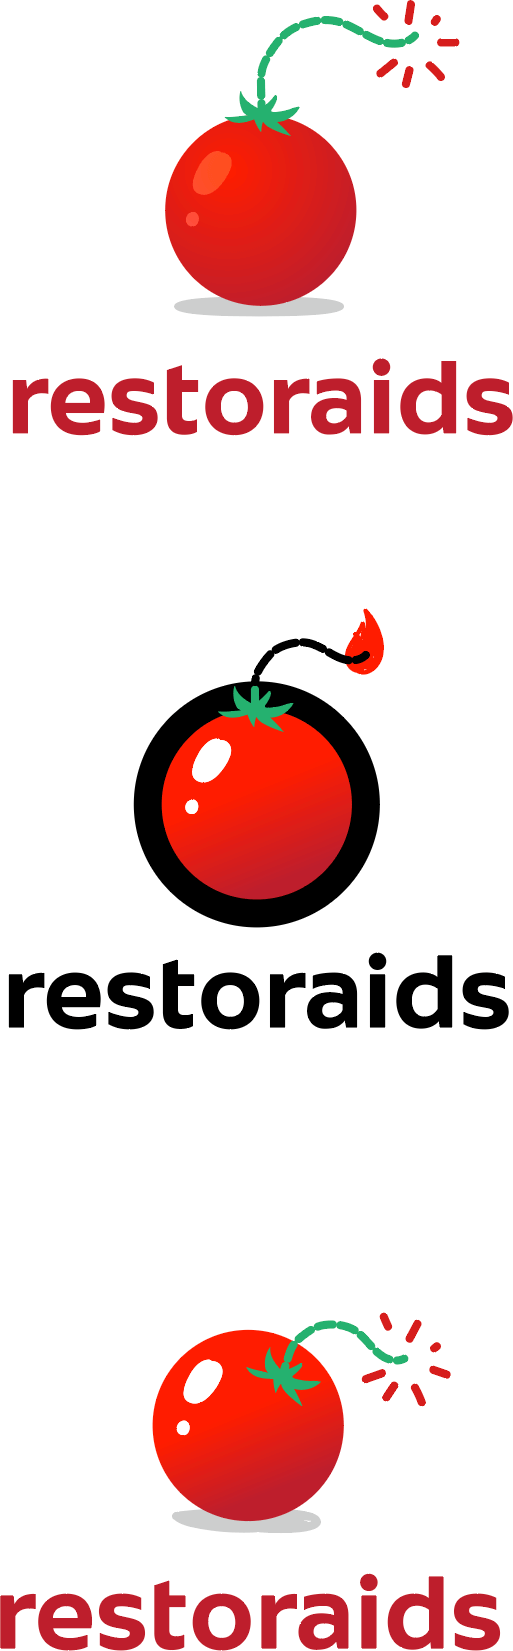 restoraids process 01